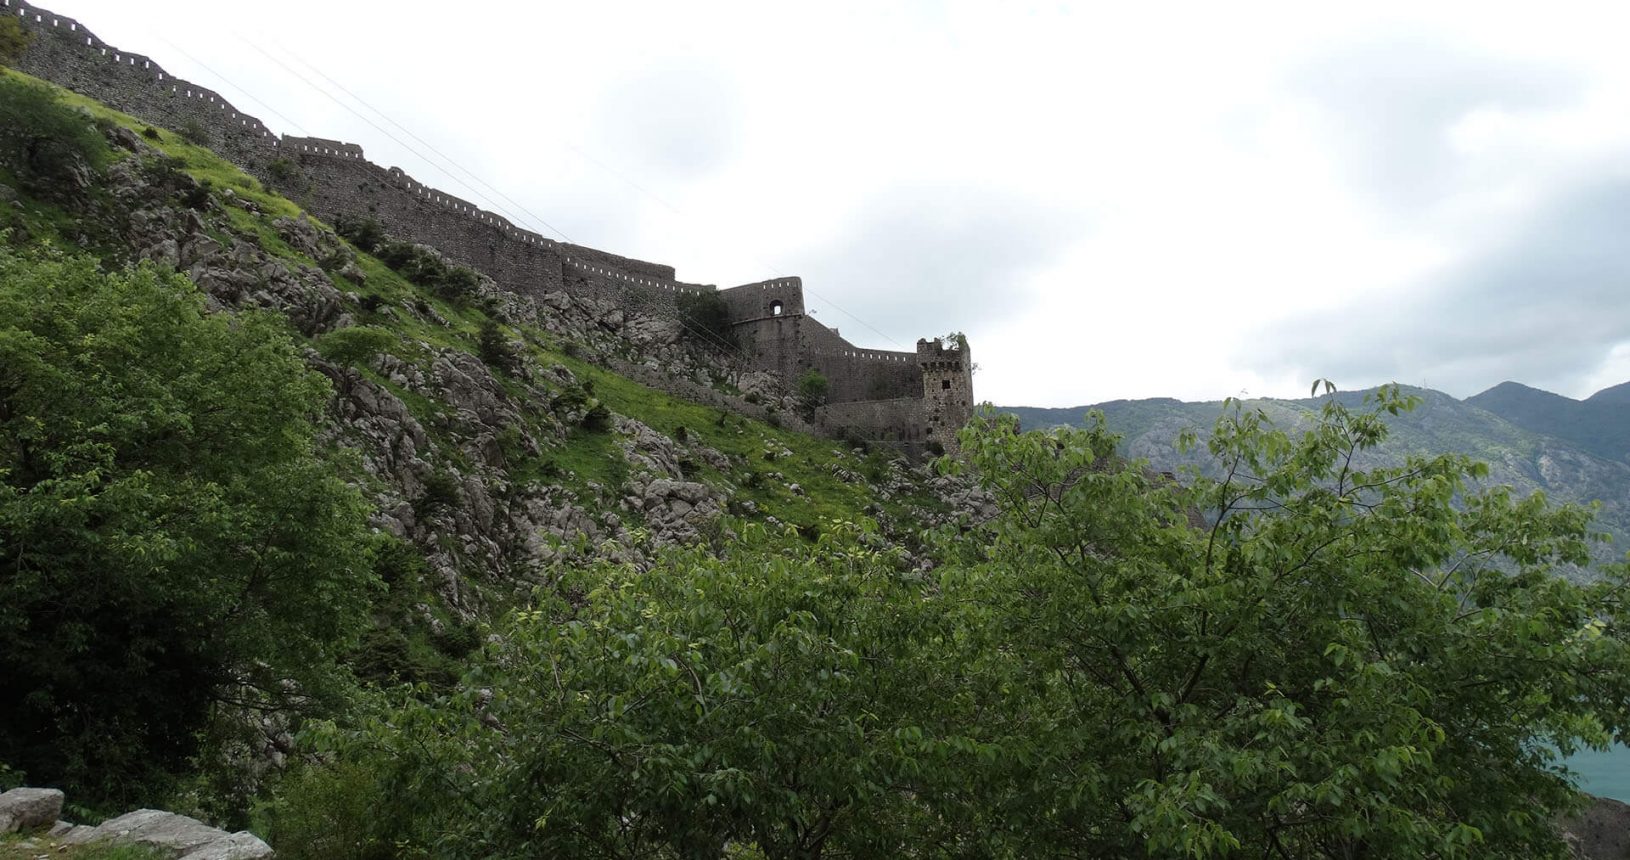 Kotor Fortress